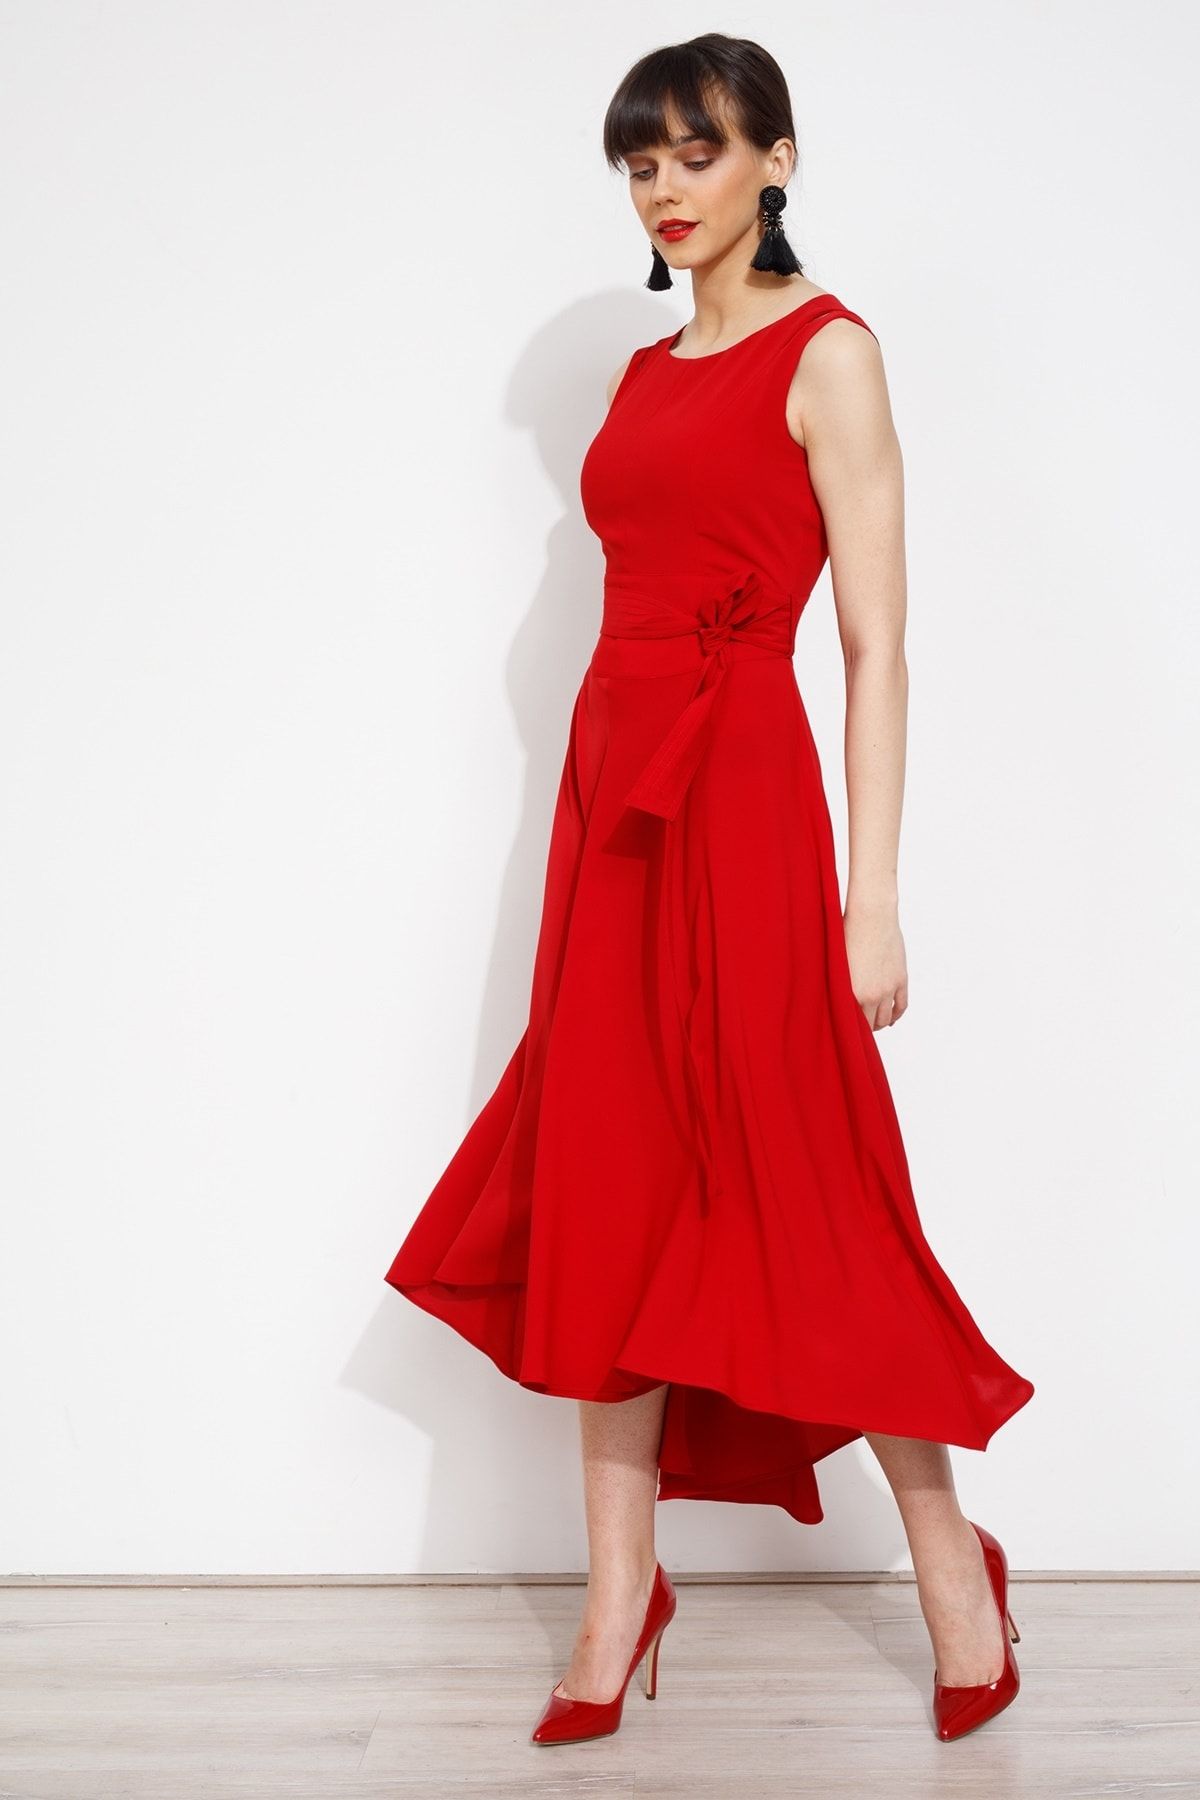 Moda İlgi Omzu Açık Volanlı Abiye  Elbise Kırmızı ILG20K06513